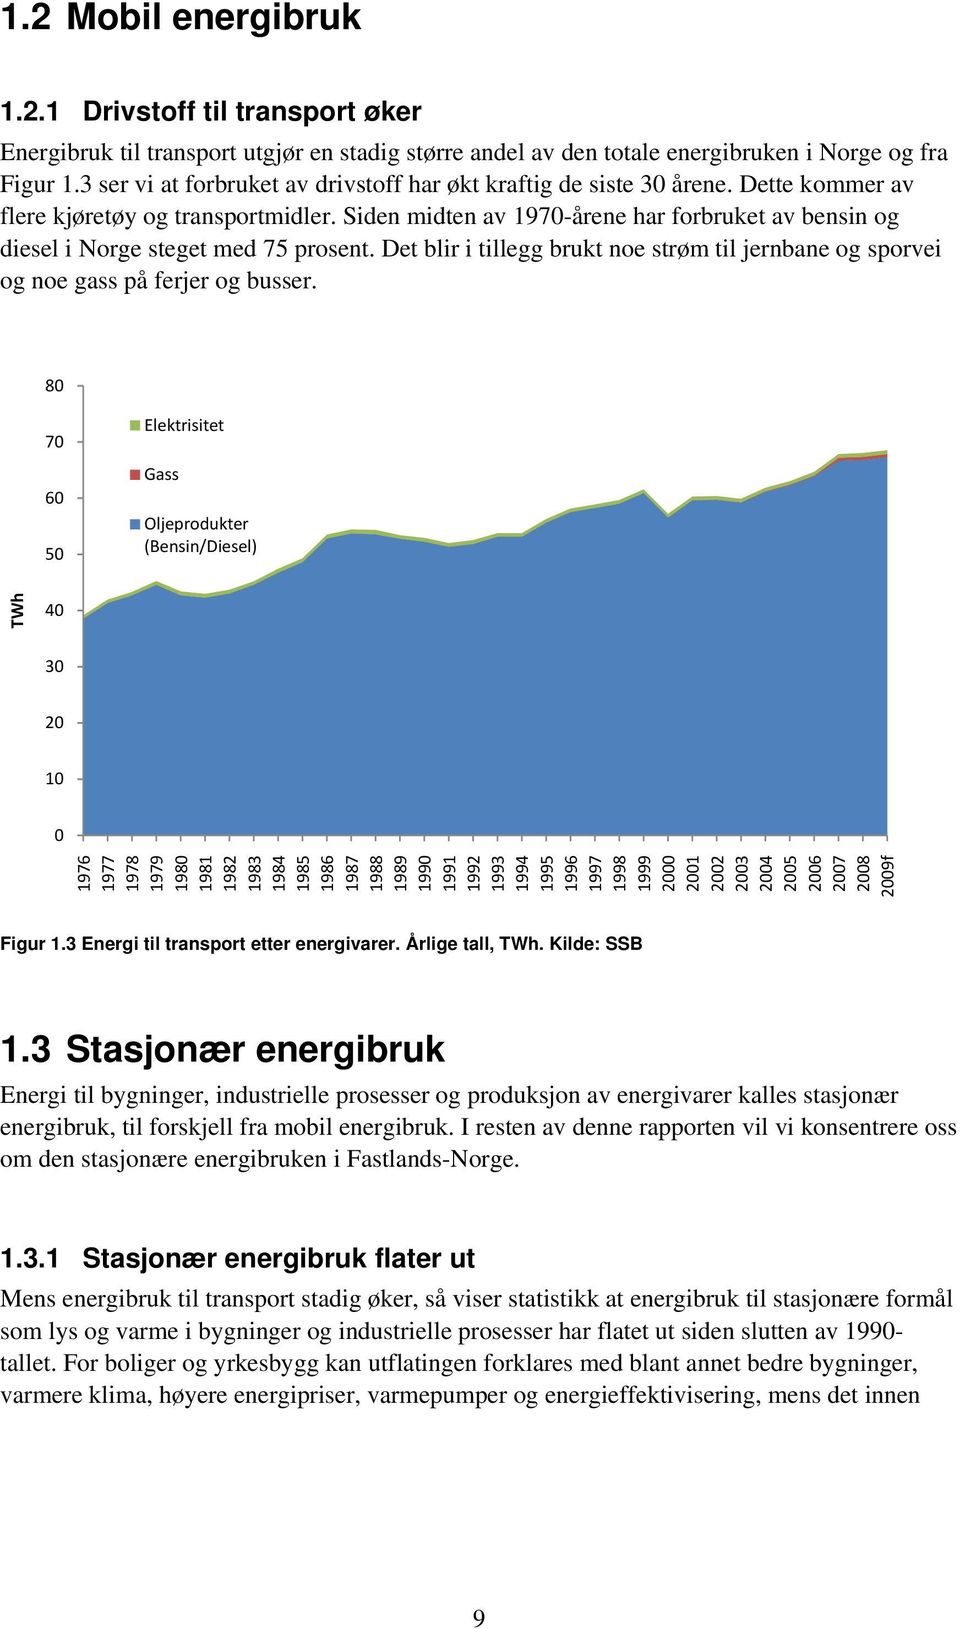 Siden midten av 1970-årene har forbruket av bensin og diesel i Norge steget med 75 prosent. Det blir i tillegg brukt noe strøm til jernbane og sporvei og noe gass på ferjer og busser.